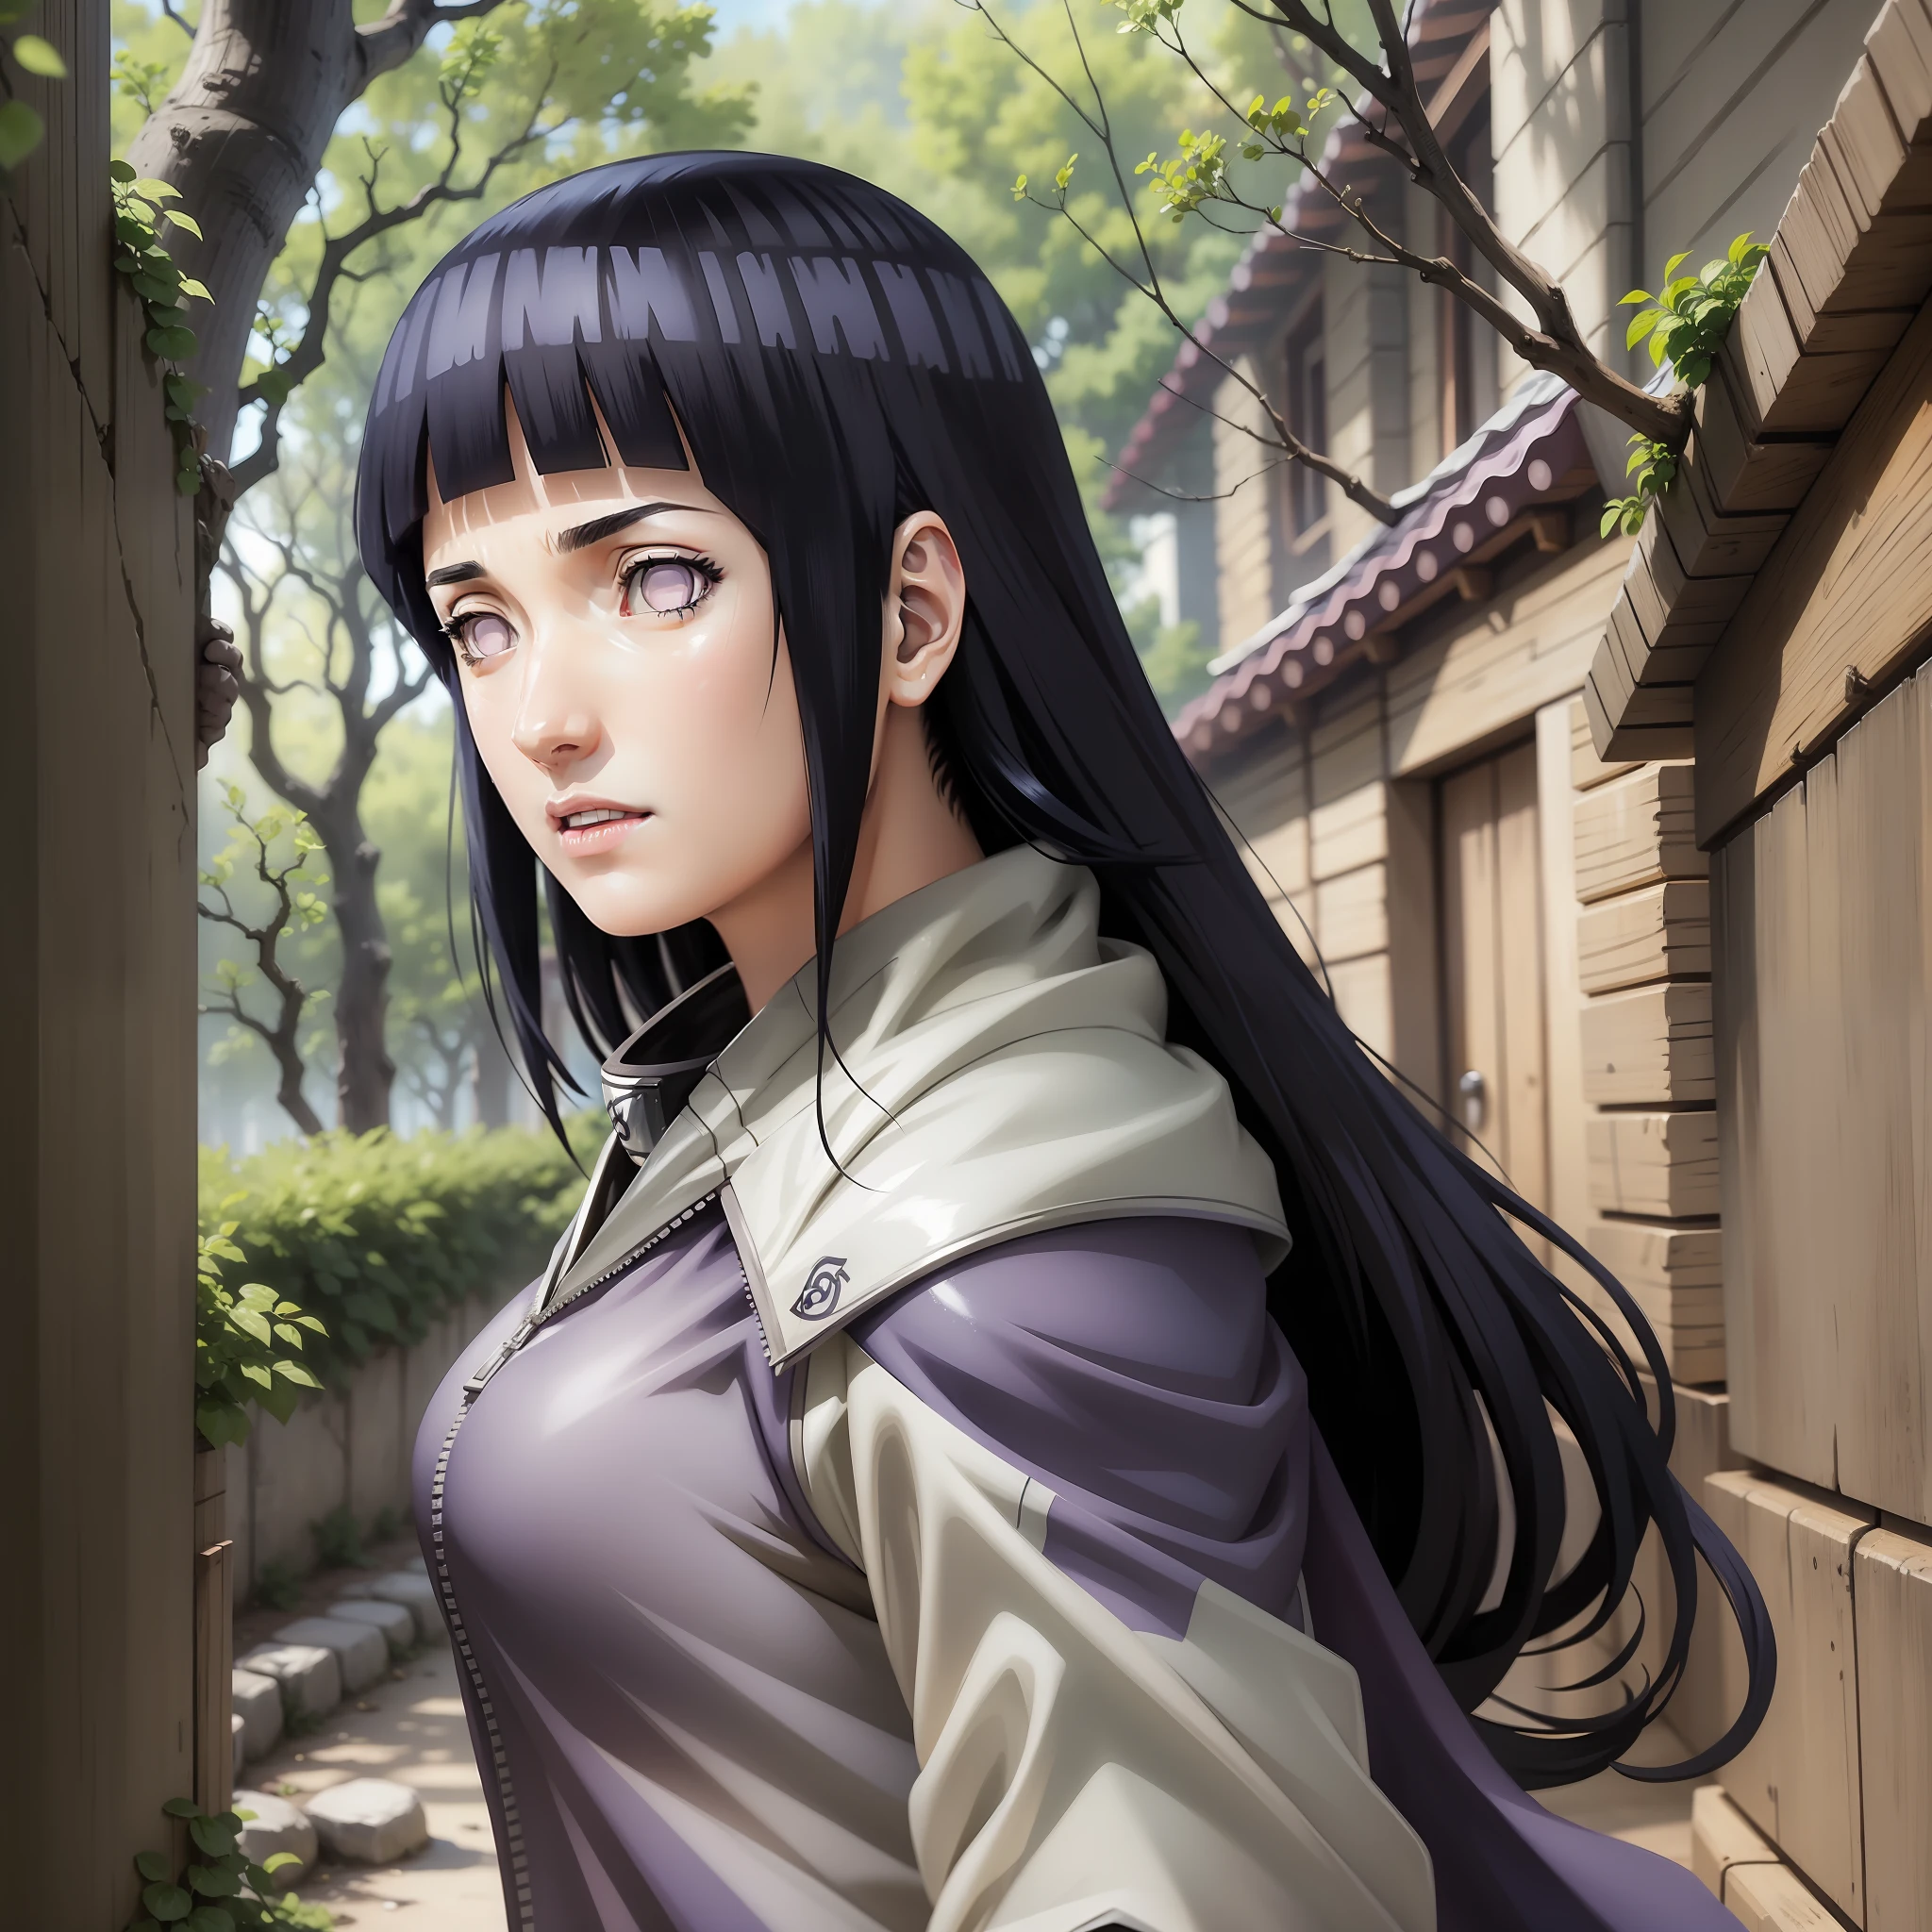 Hinata linda, Alto, super realista e bem detalhado em konoha